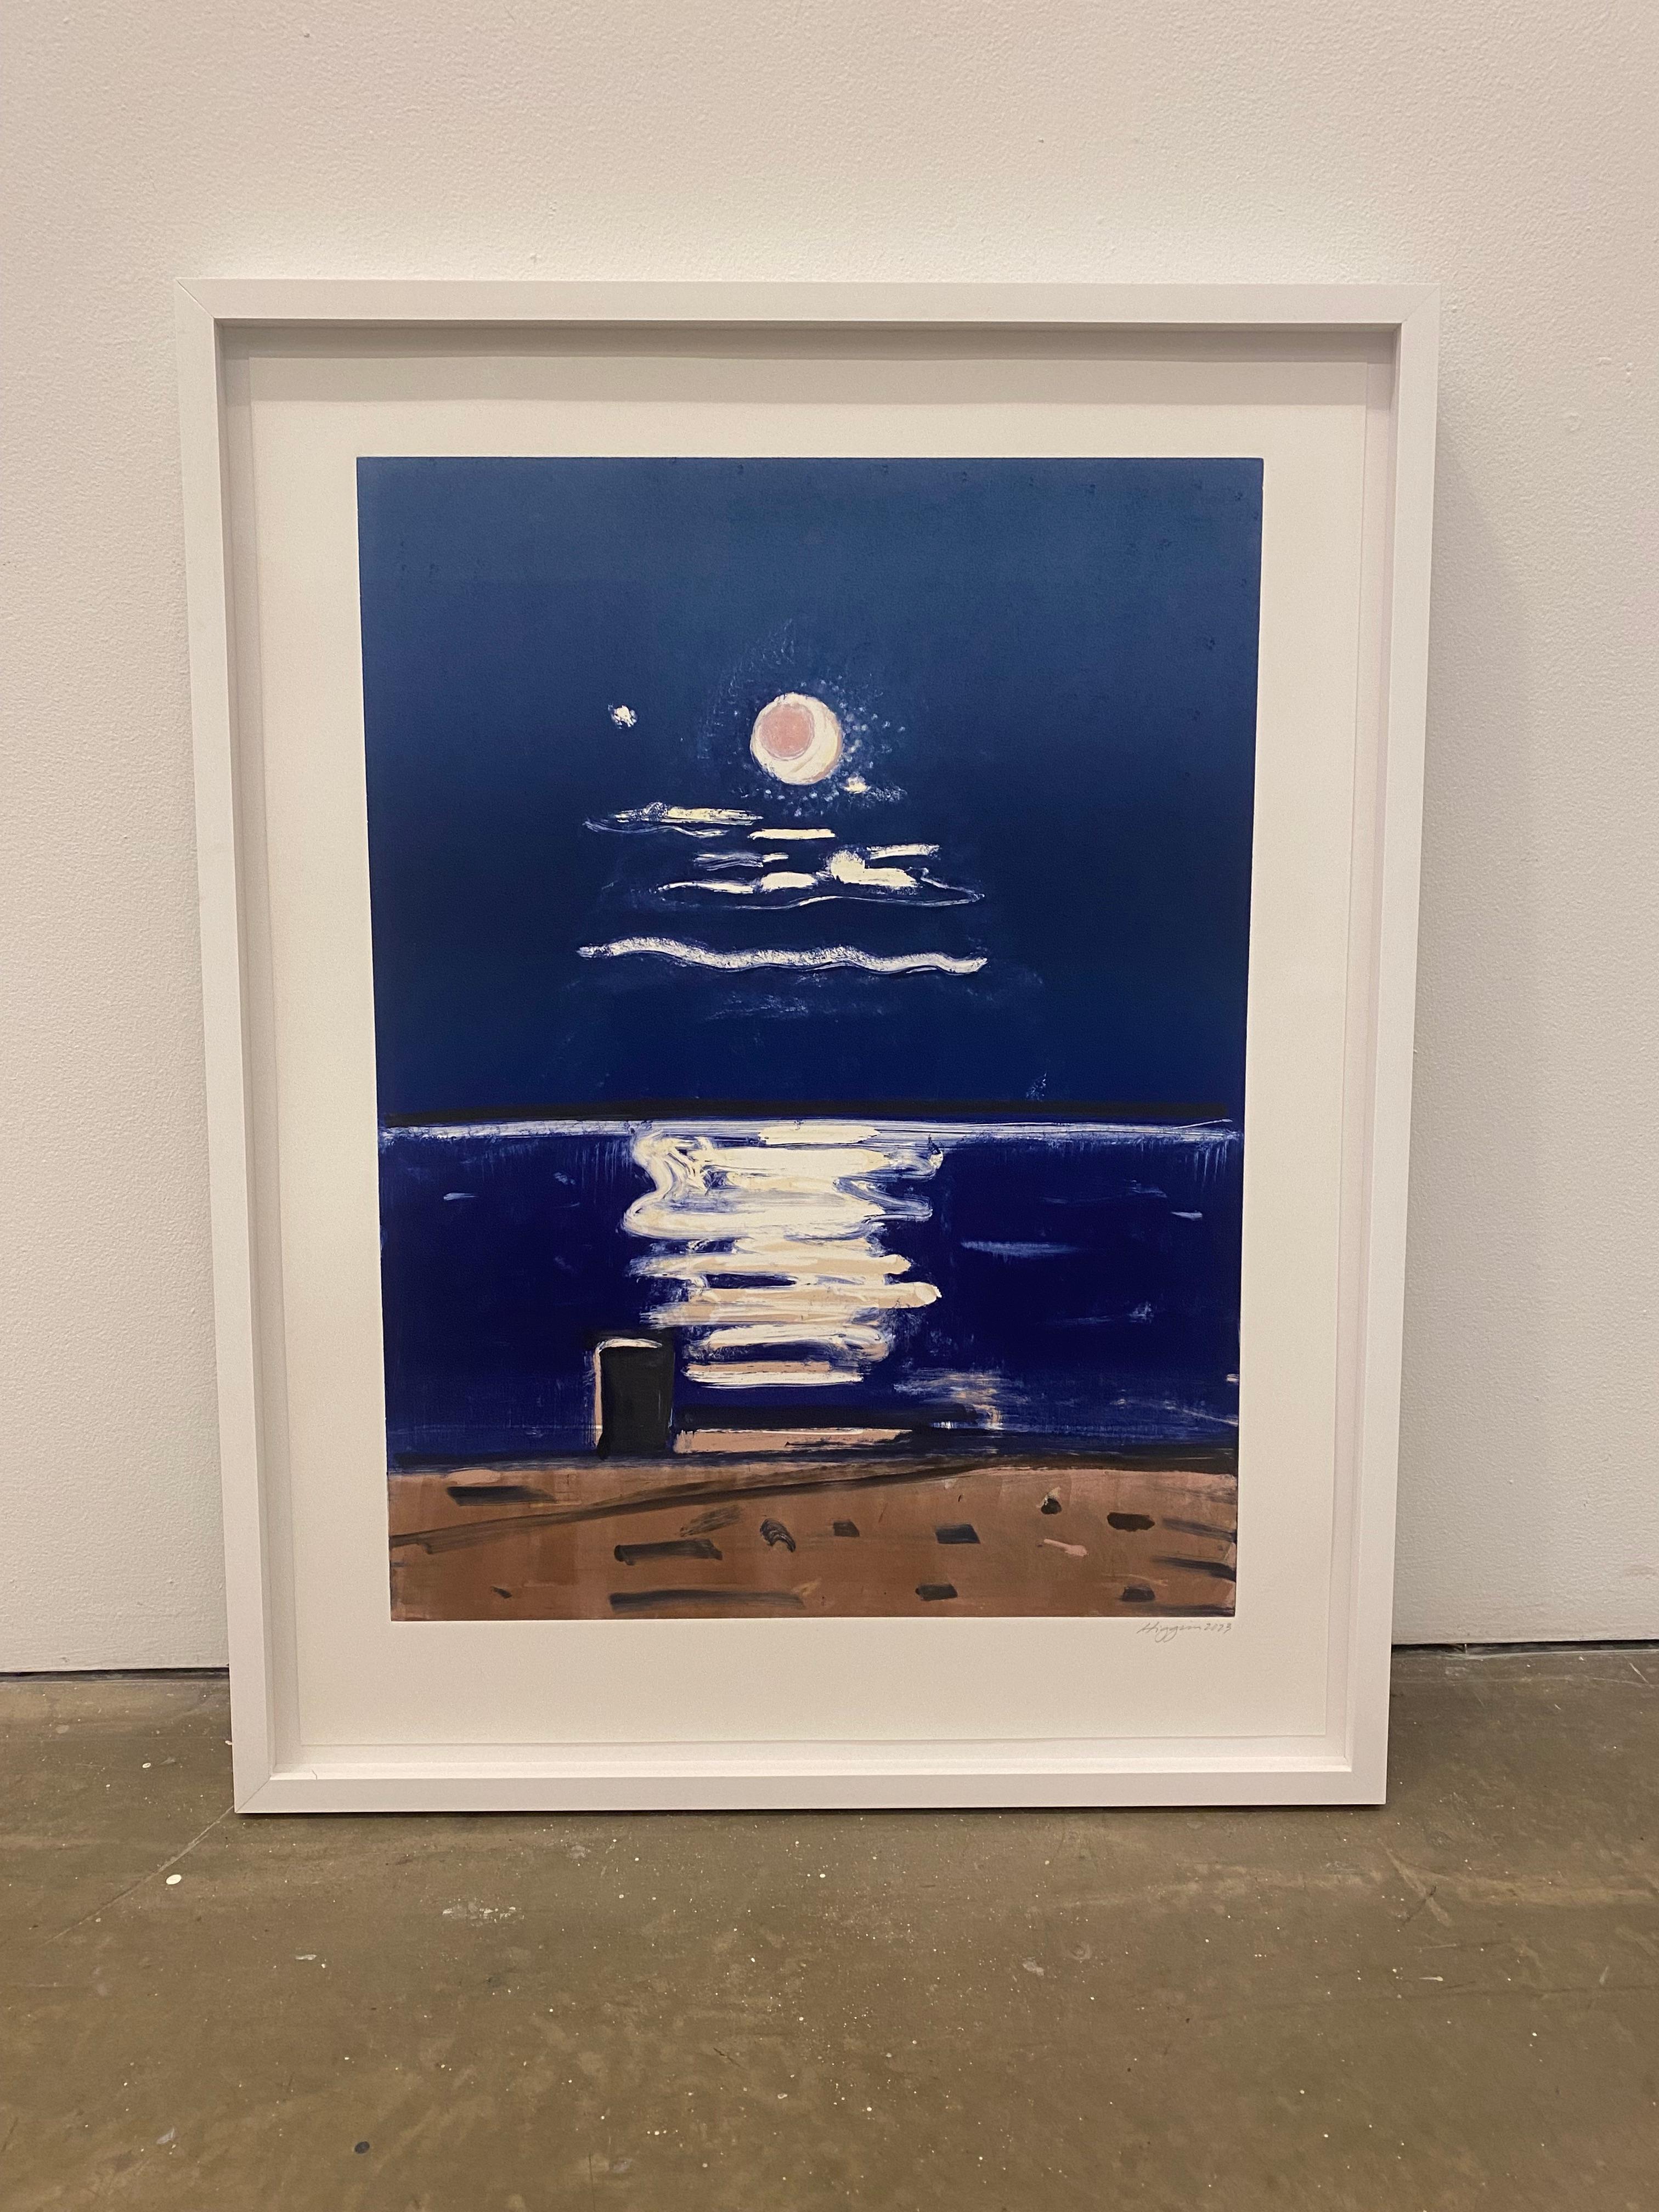 Moonlight on Water #2 - Painting by Elizabeth Higgins